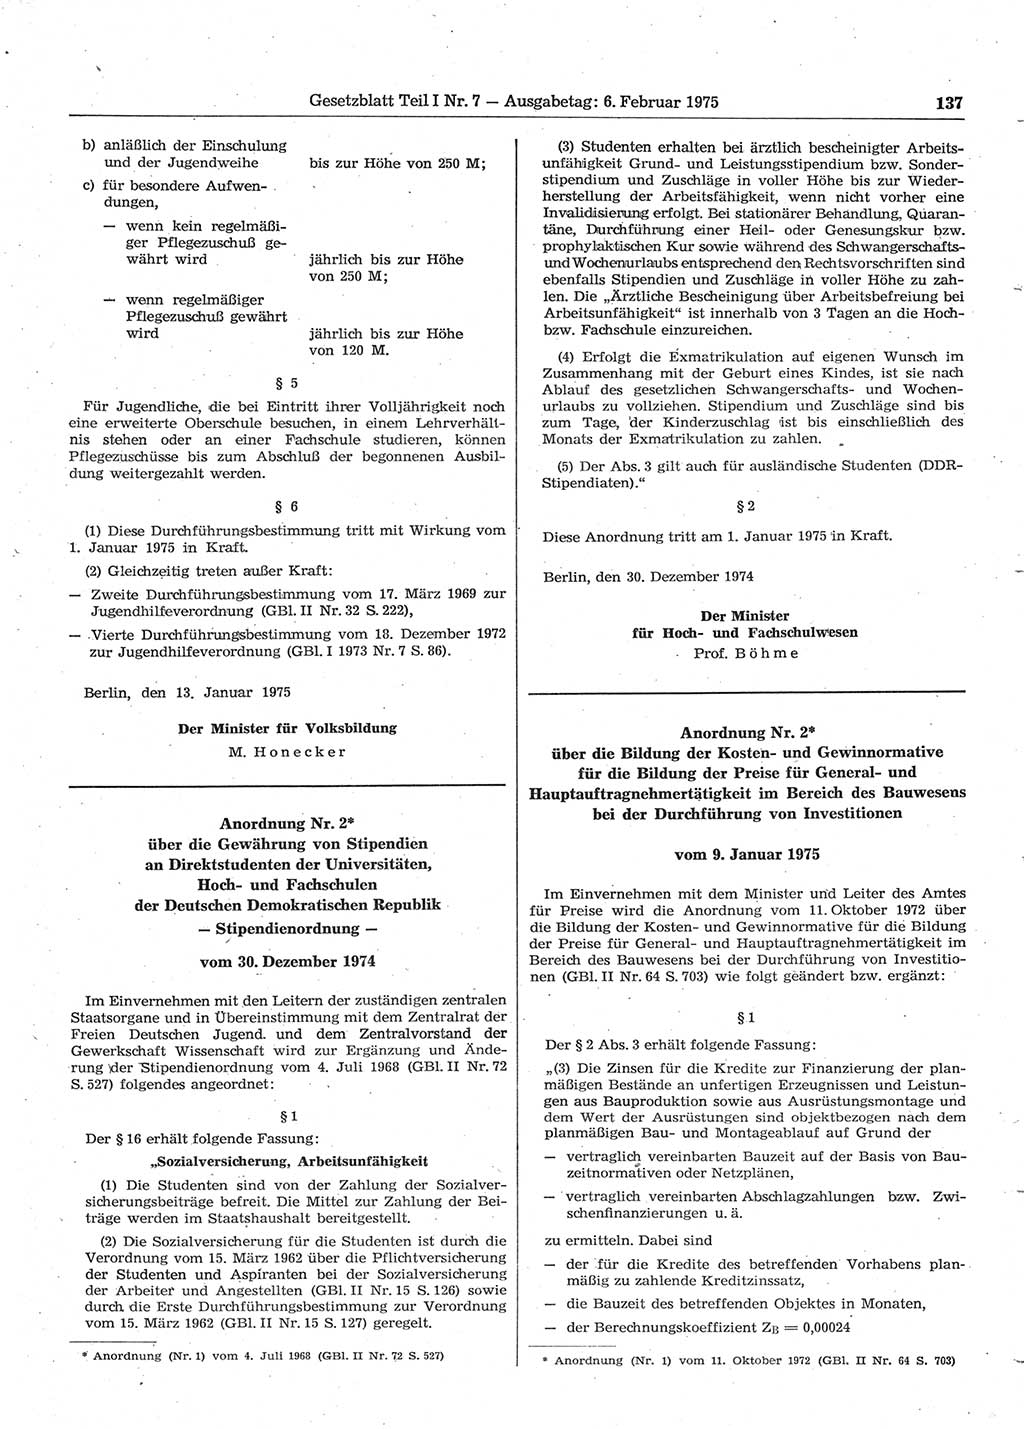 Gesetzblatt (GBl.) der Deutschen Demokratischen Republik (DDR) Teil Ⅰ 1975, Seite 137 (GBl. DDR Ⅰ 1975, S. 137)